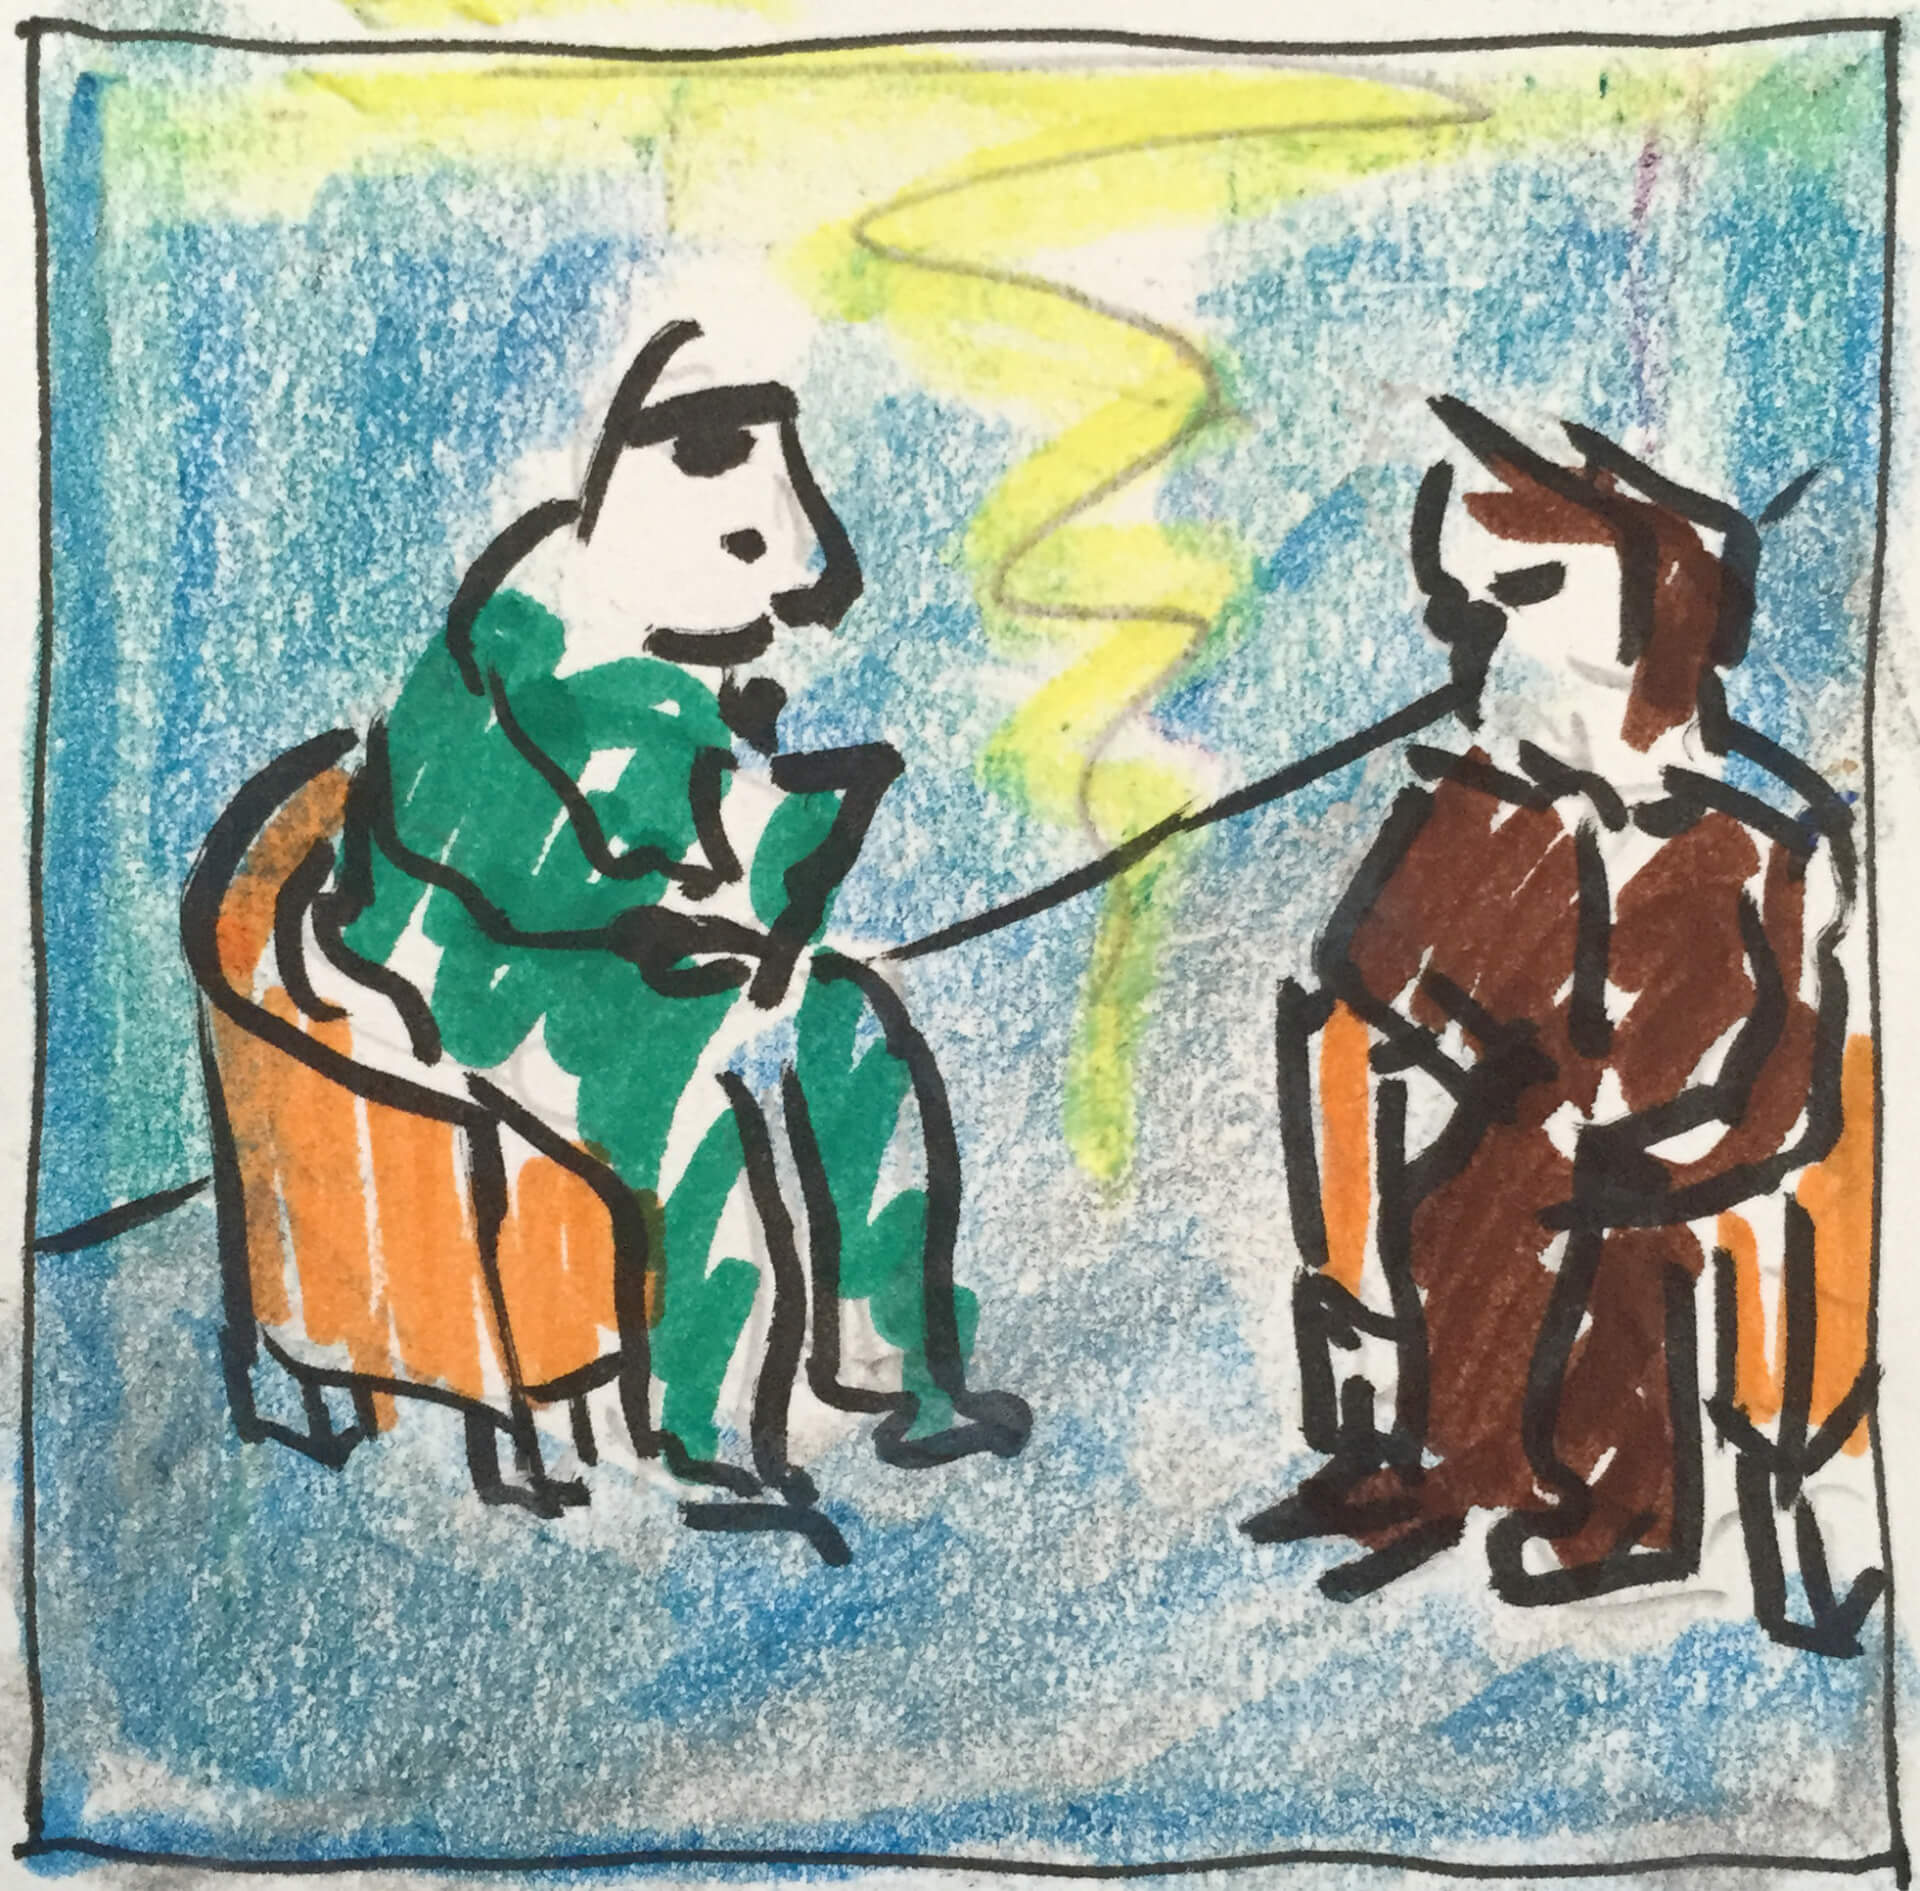 Kinderzeichnung von zwei anthropomorphen Tieren, die auf Stühlen sitzen und reden, mit einer Zickzacklinie zwischen ihnen, die eine Konversation andeuten soll, um das Publikum zu fesseln.